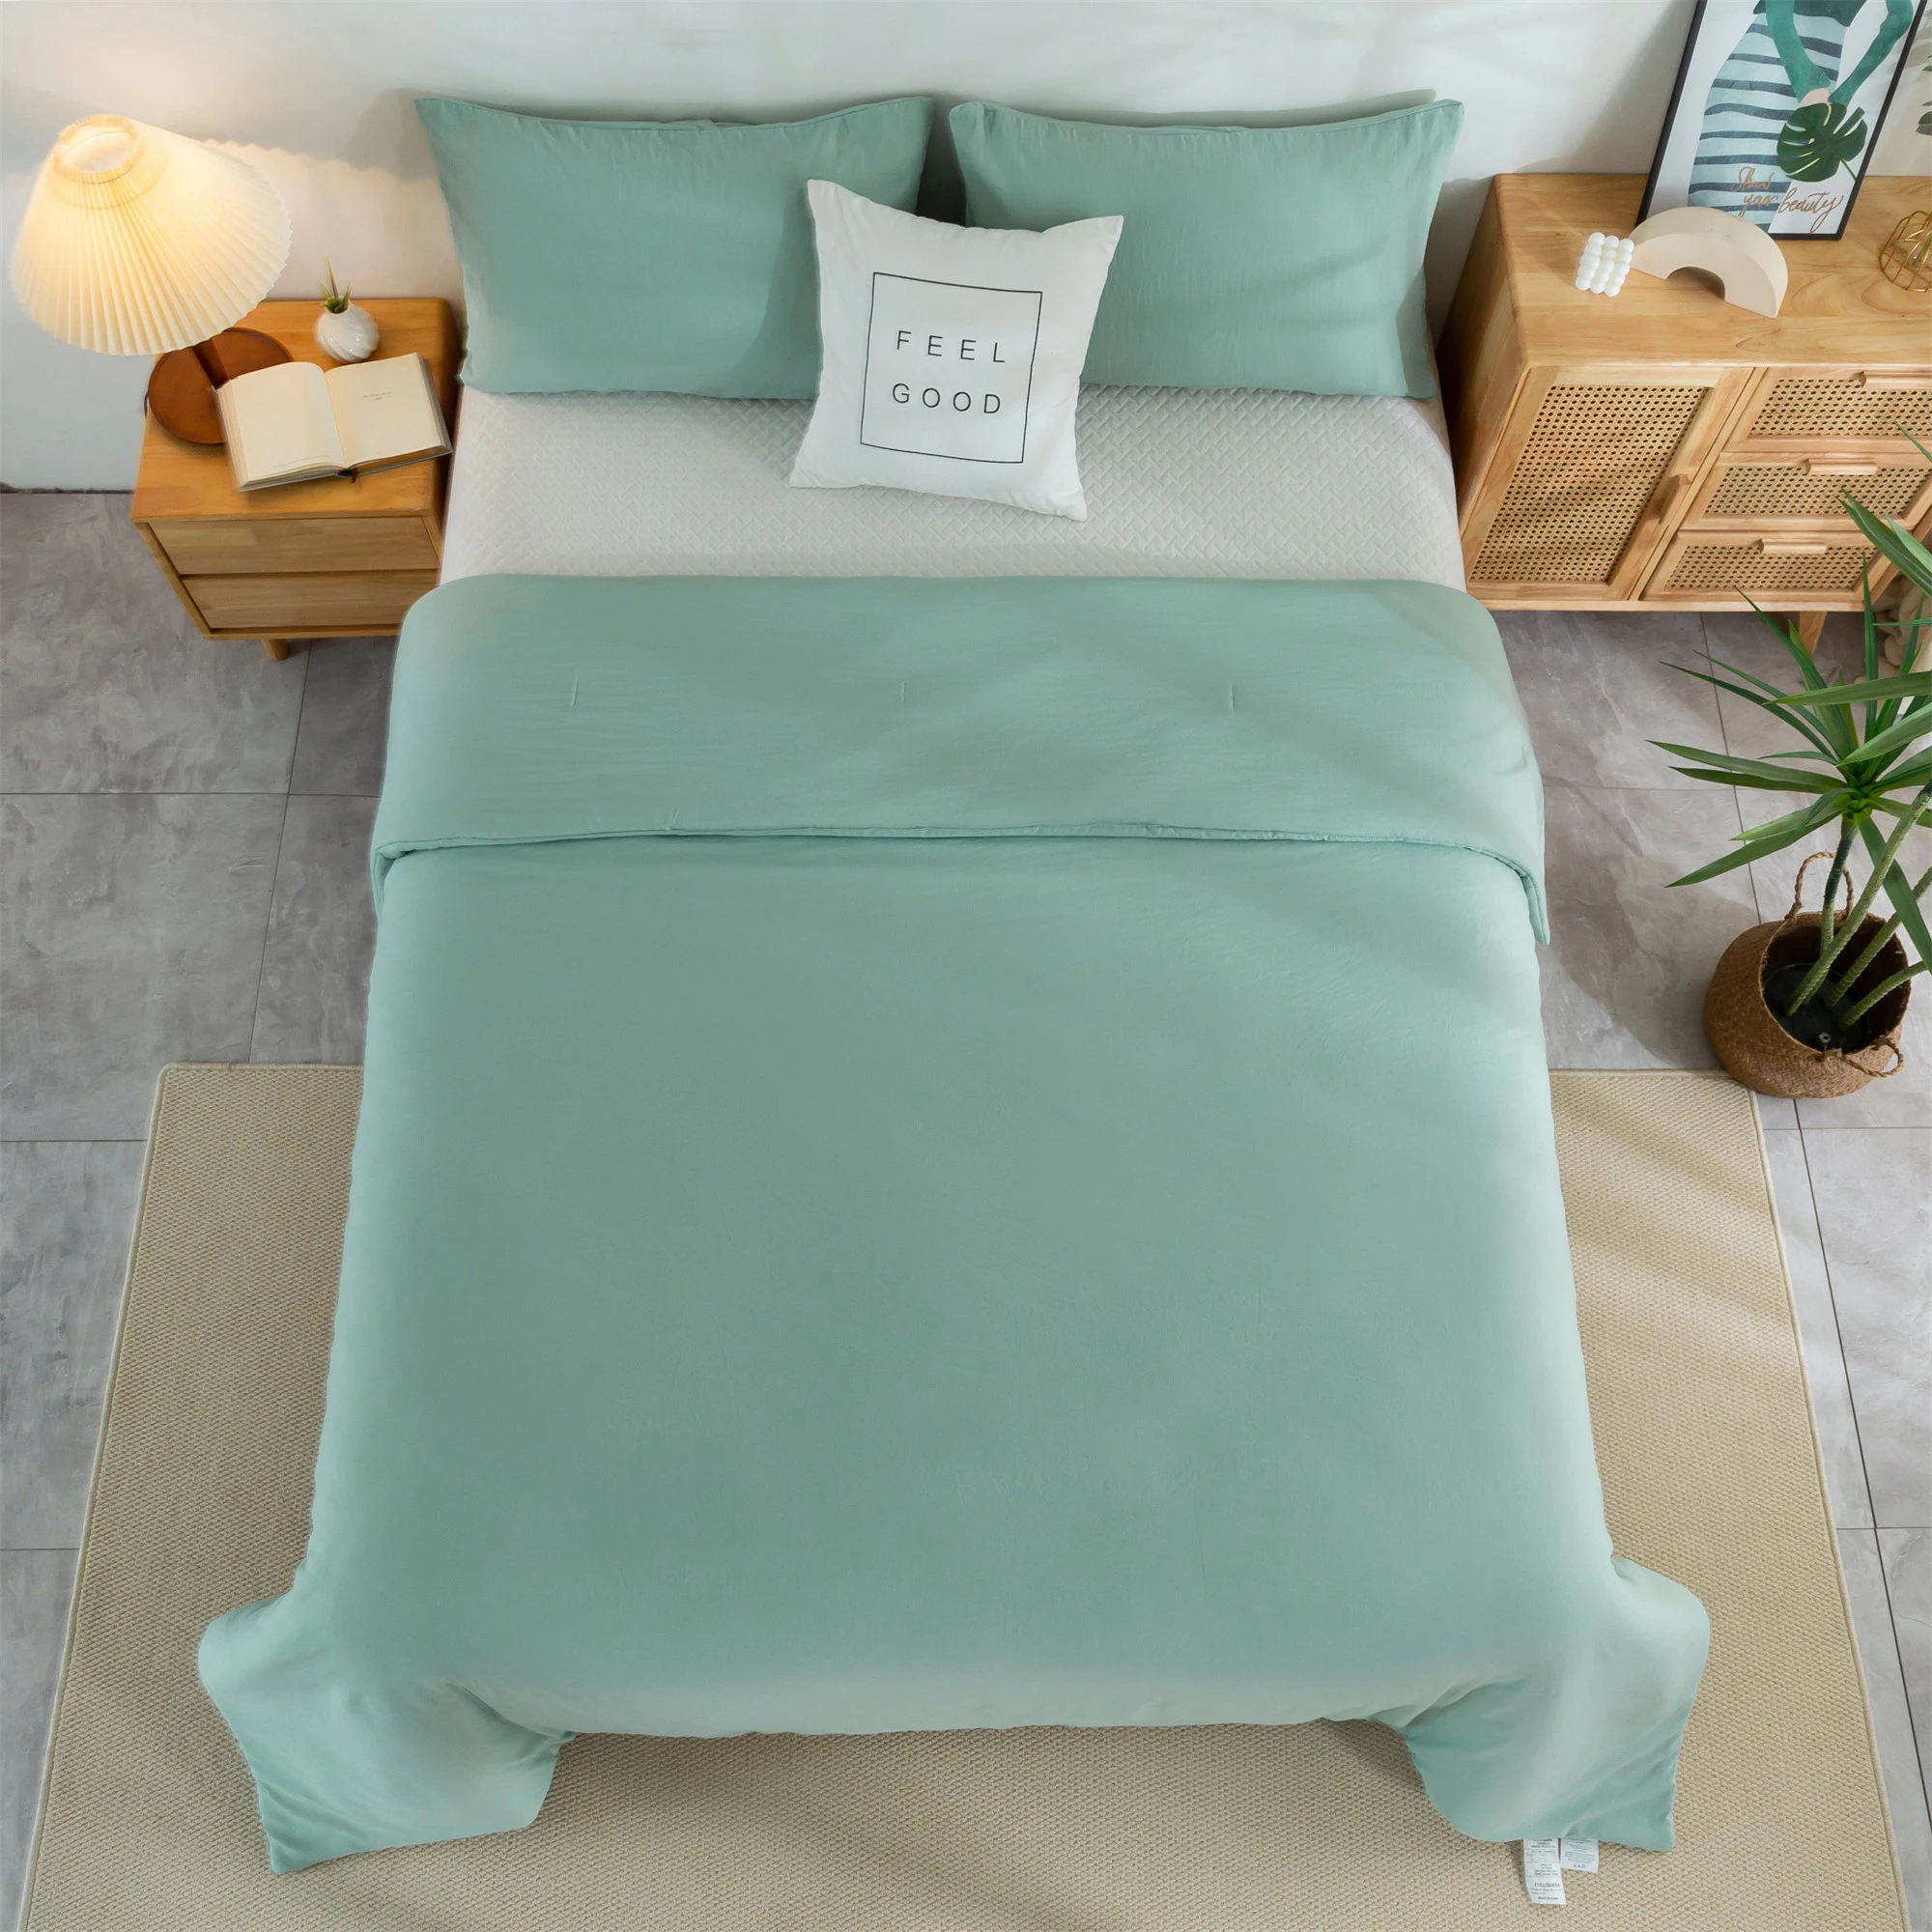 

Королевский/полноразмерный однотонный комплект стеганого одеяла, Сверхмягкие постельные принадлежности с эффектом потертости, наборы стеганых одеял для девочек, зеленого цвета и 2 подушки